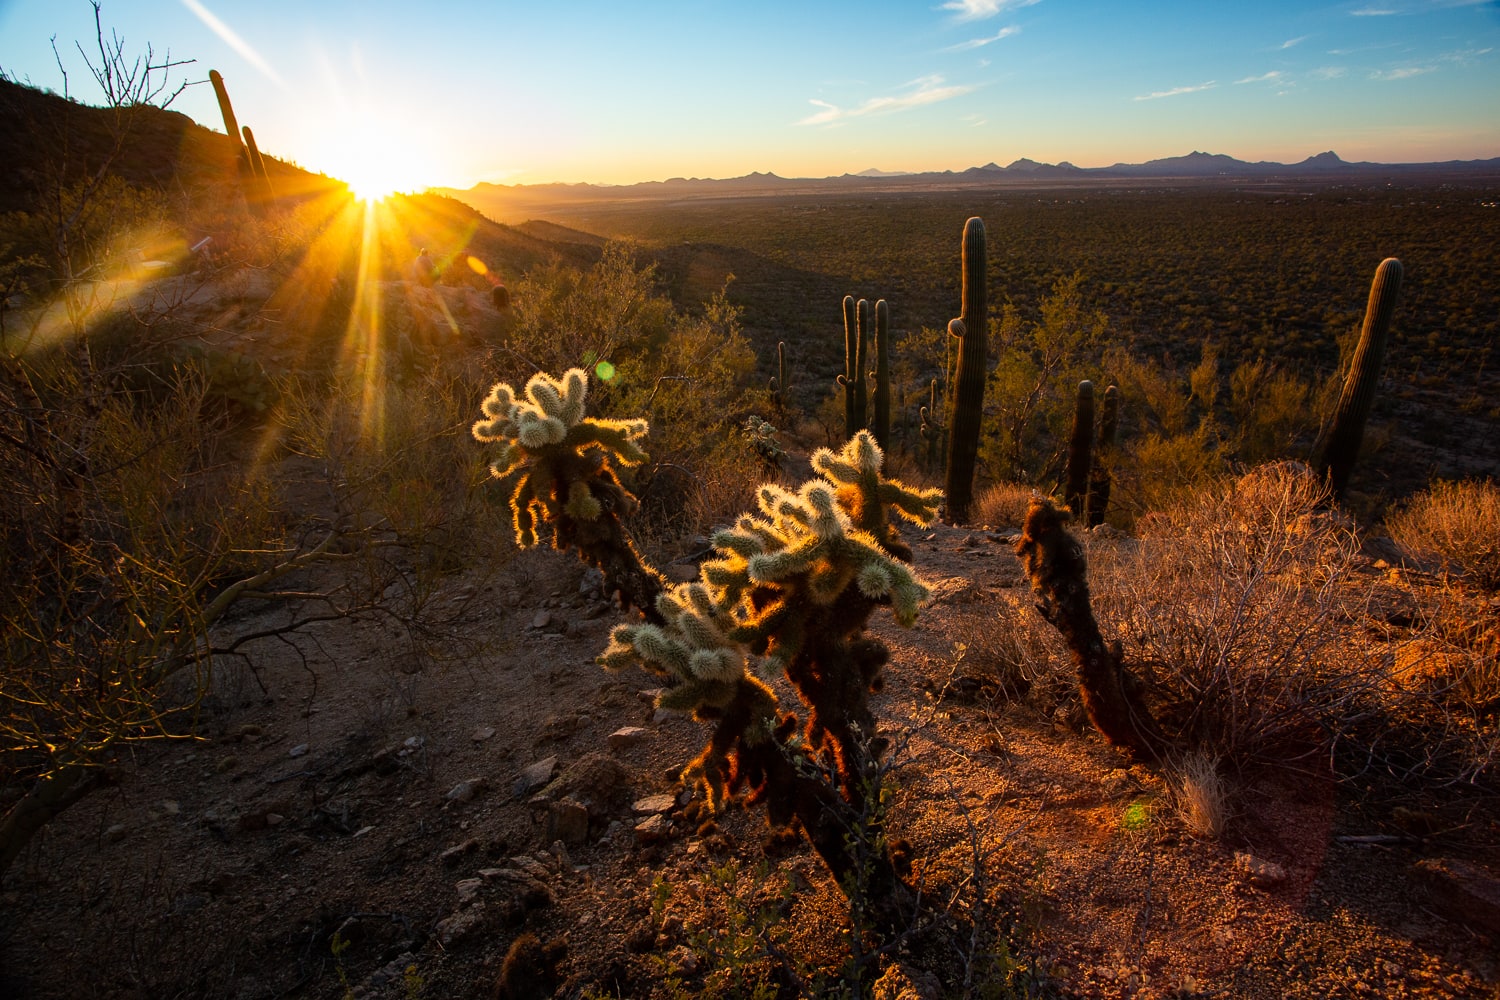 A cholla cactus in Saguaro National Park at sunset